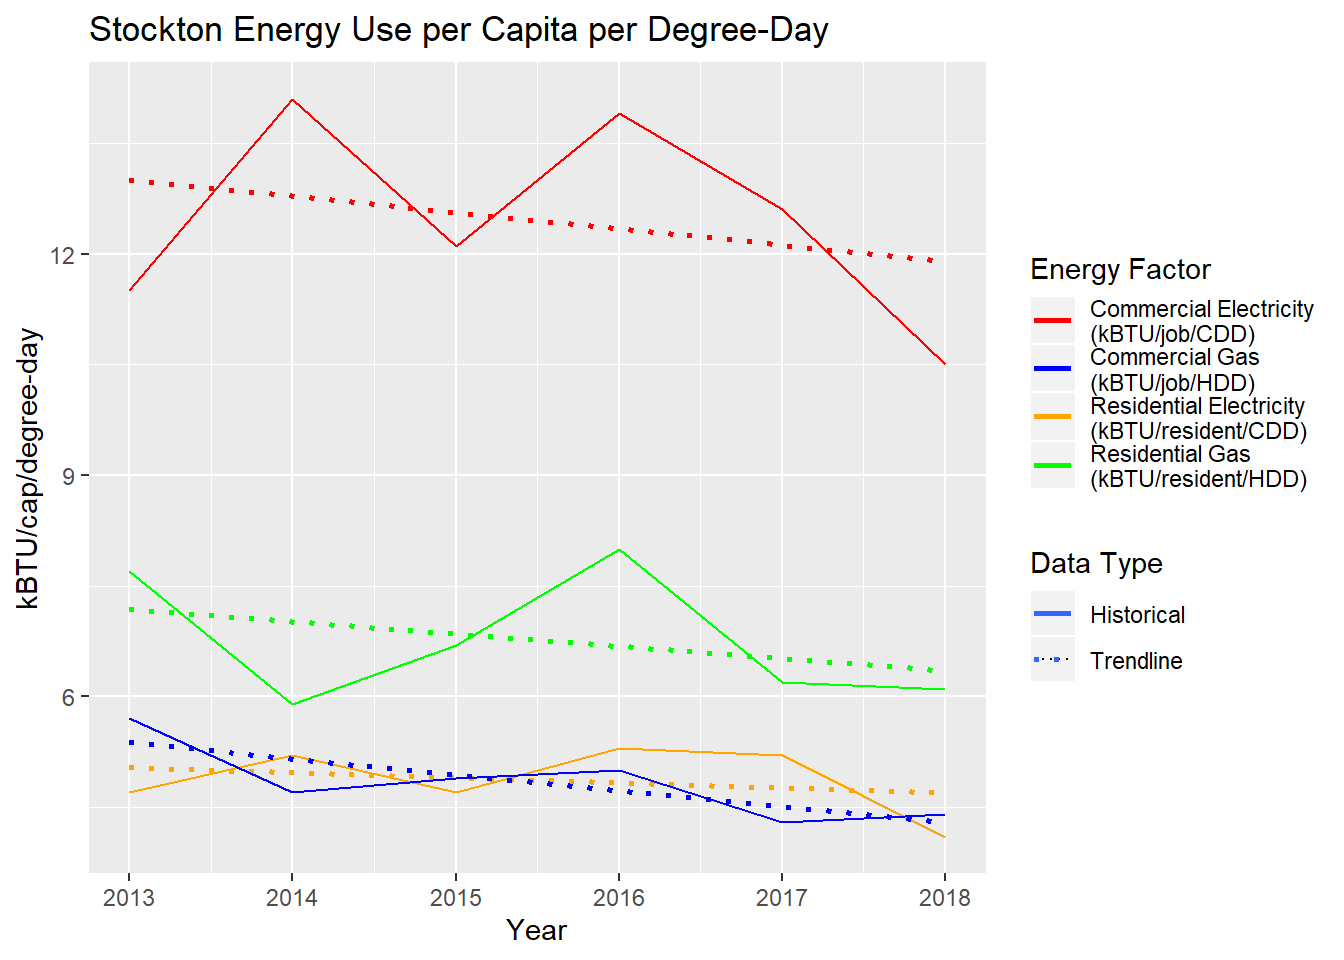 Stockton annual energy use per capita per degree-day, 2013 to 2018.